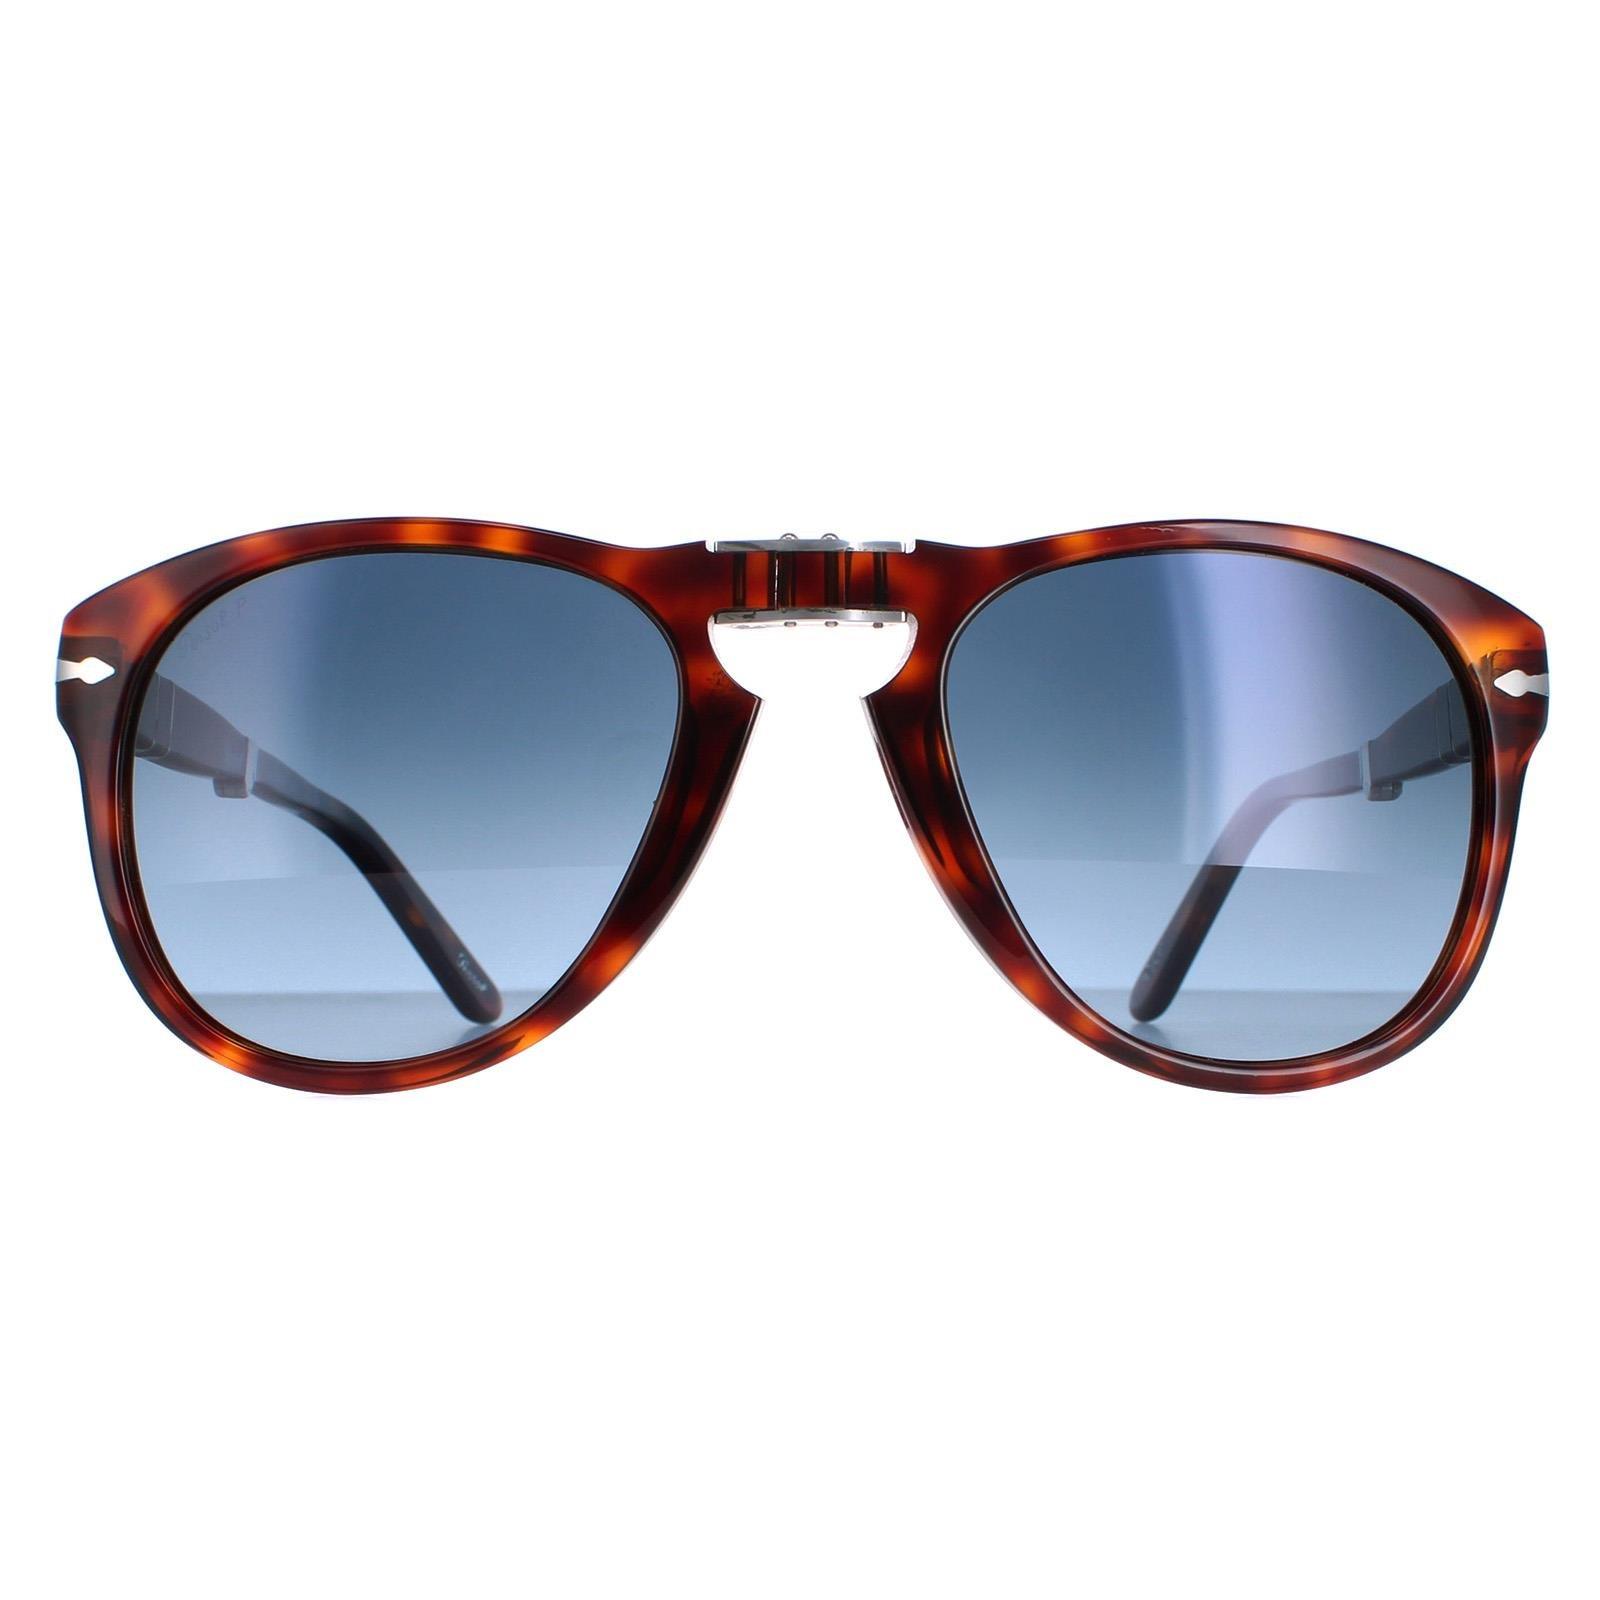 Коричневые гавана-синие поляризованные солнцезащитные очки Aviator с градиентом Persol, коричневый steve mcqueen william claxton